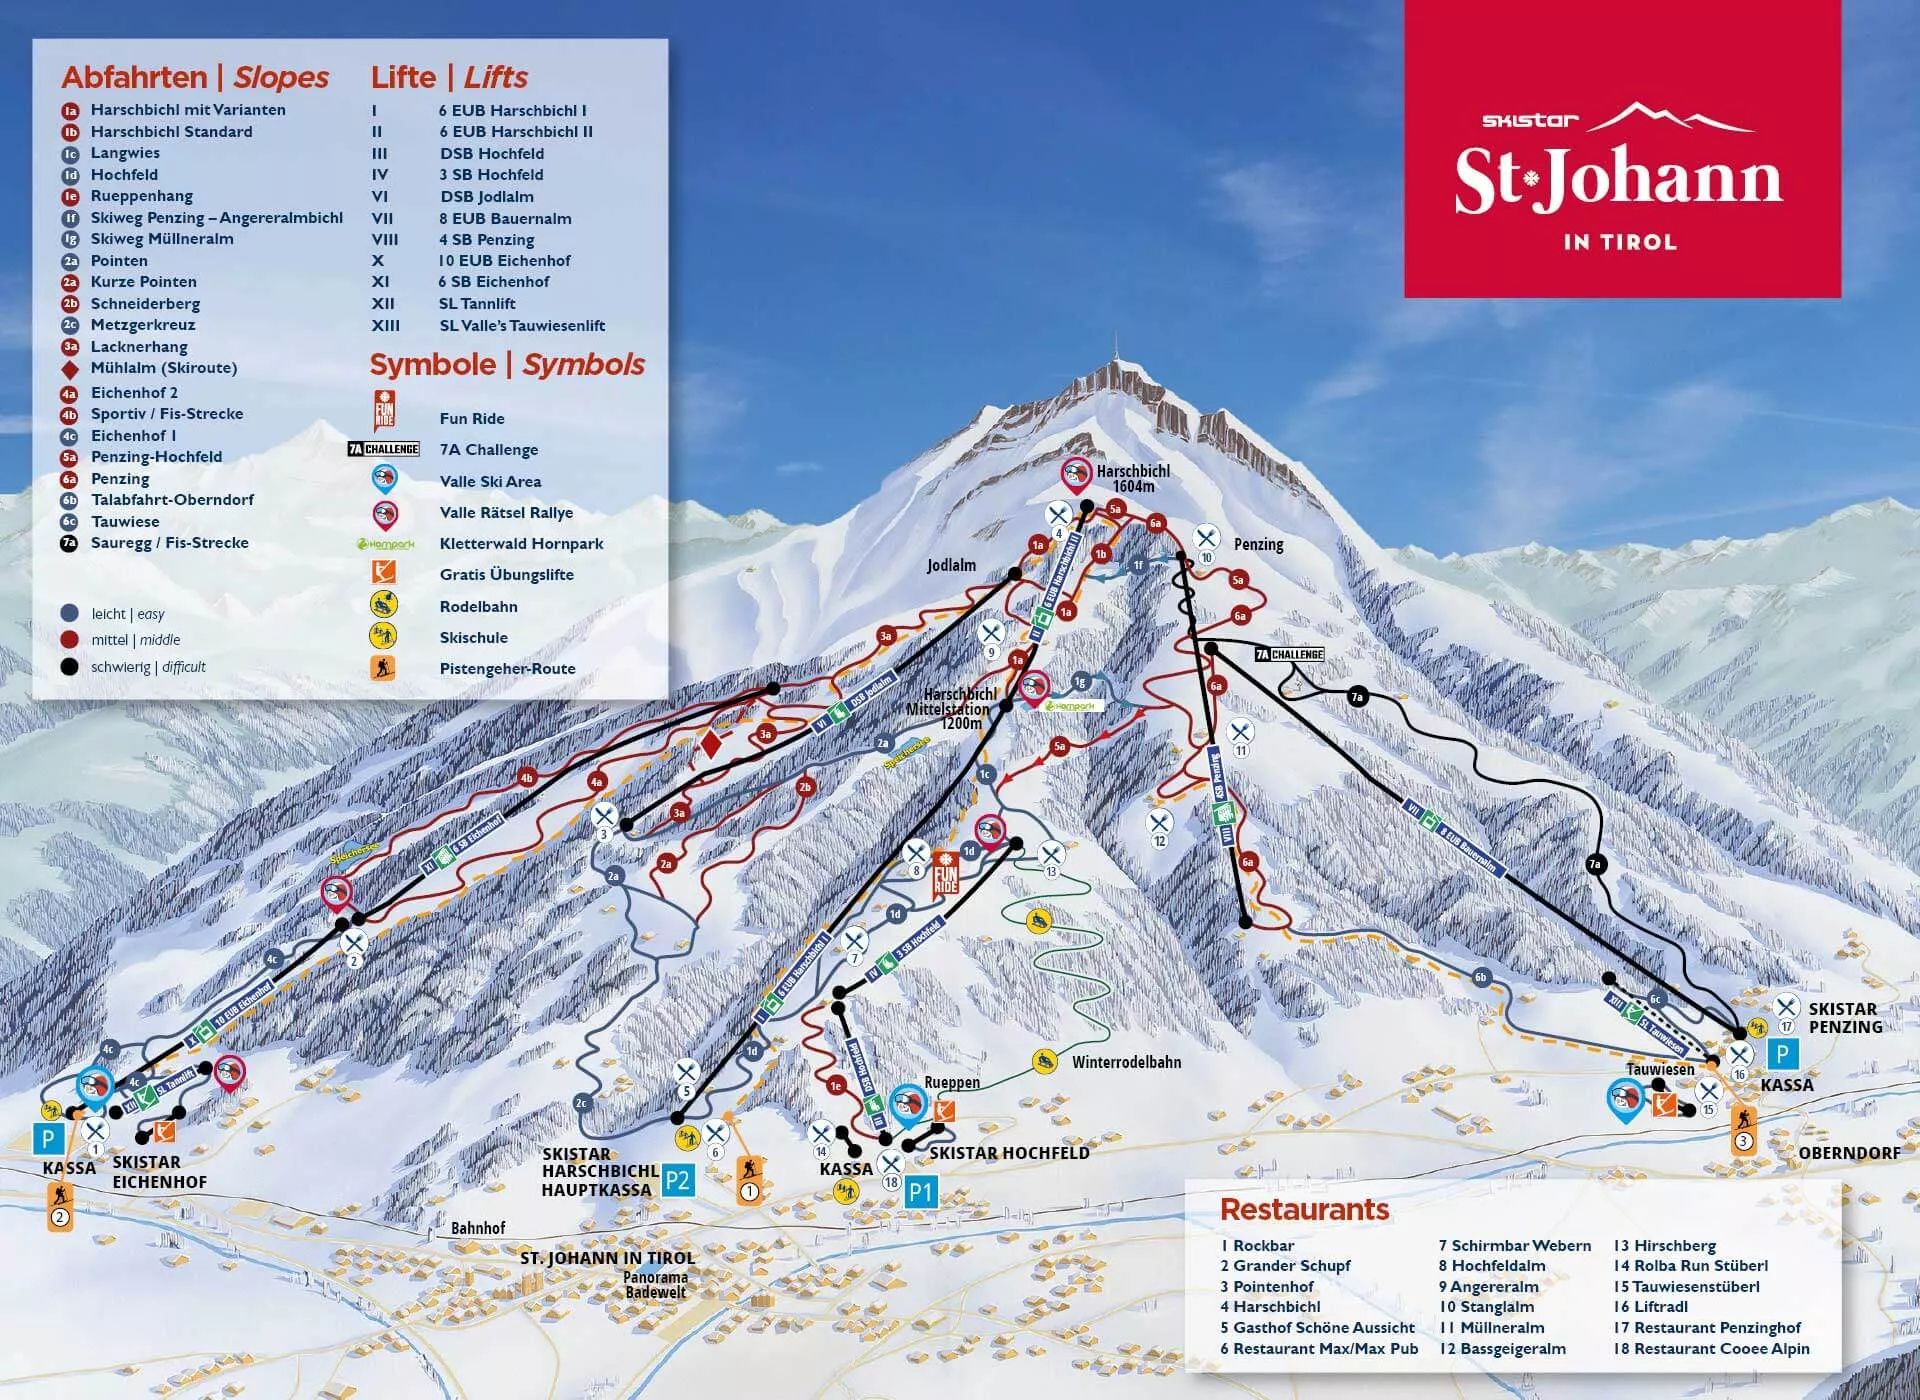 Das Skigebiet in St. Johann in Tirol.